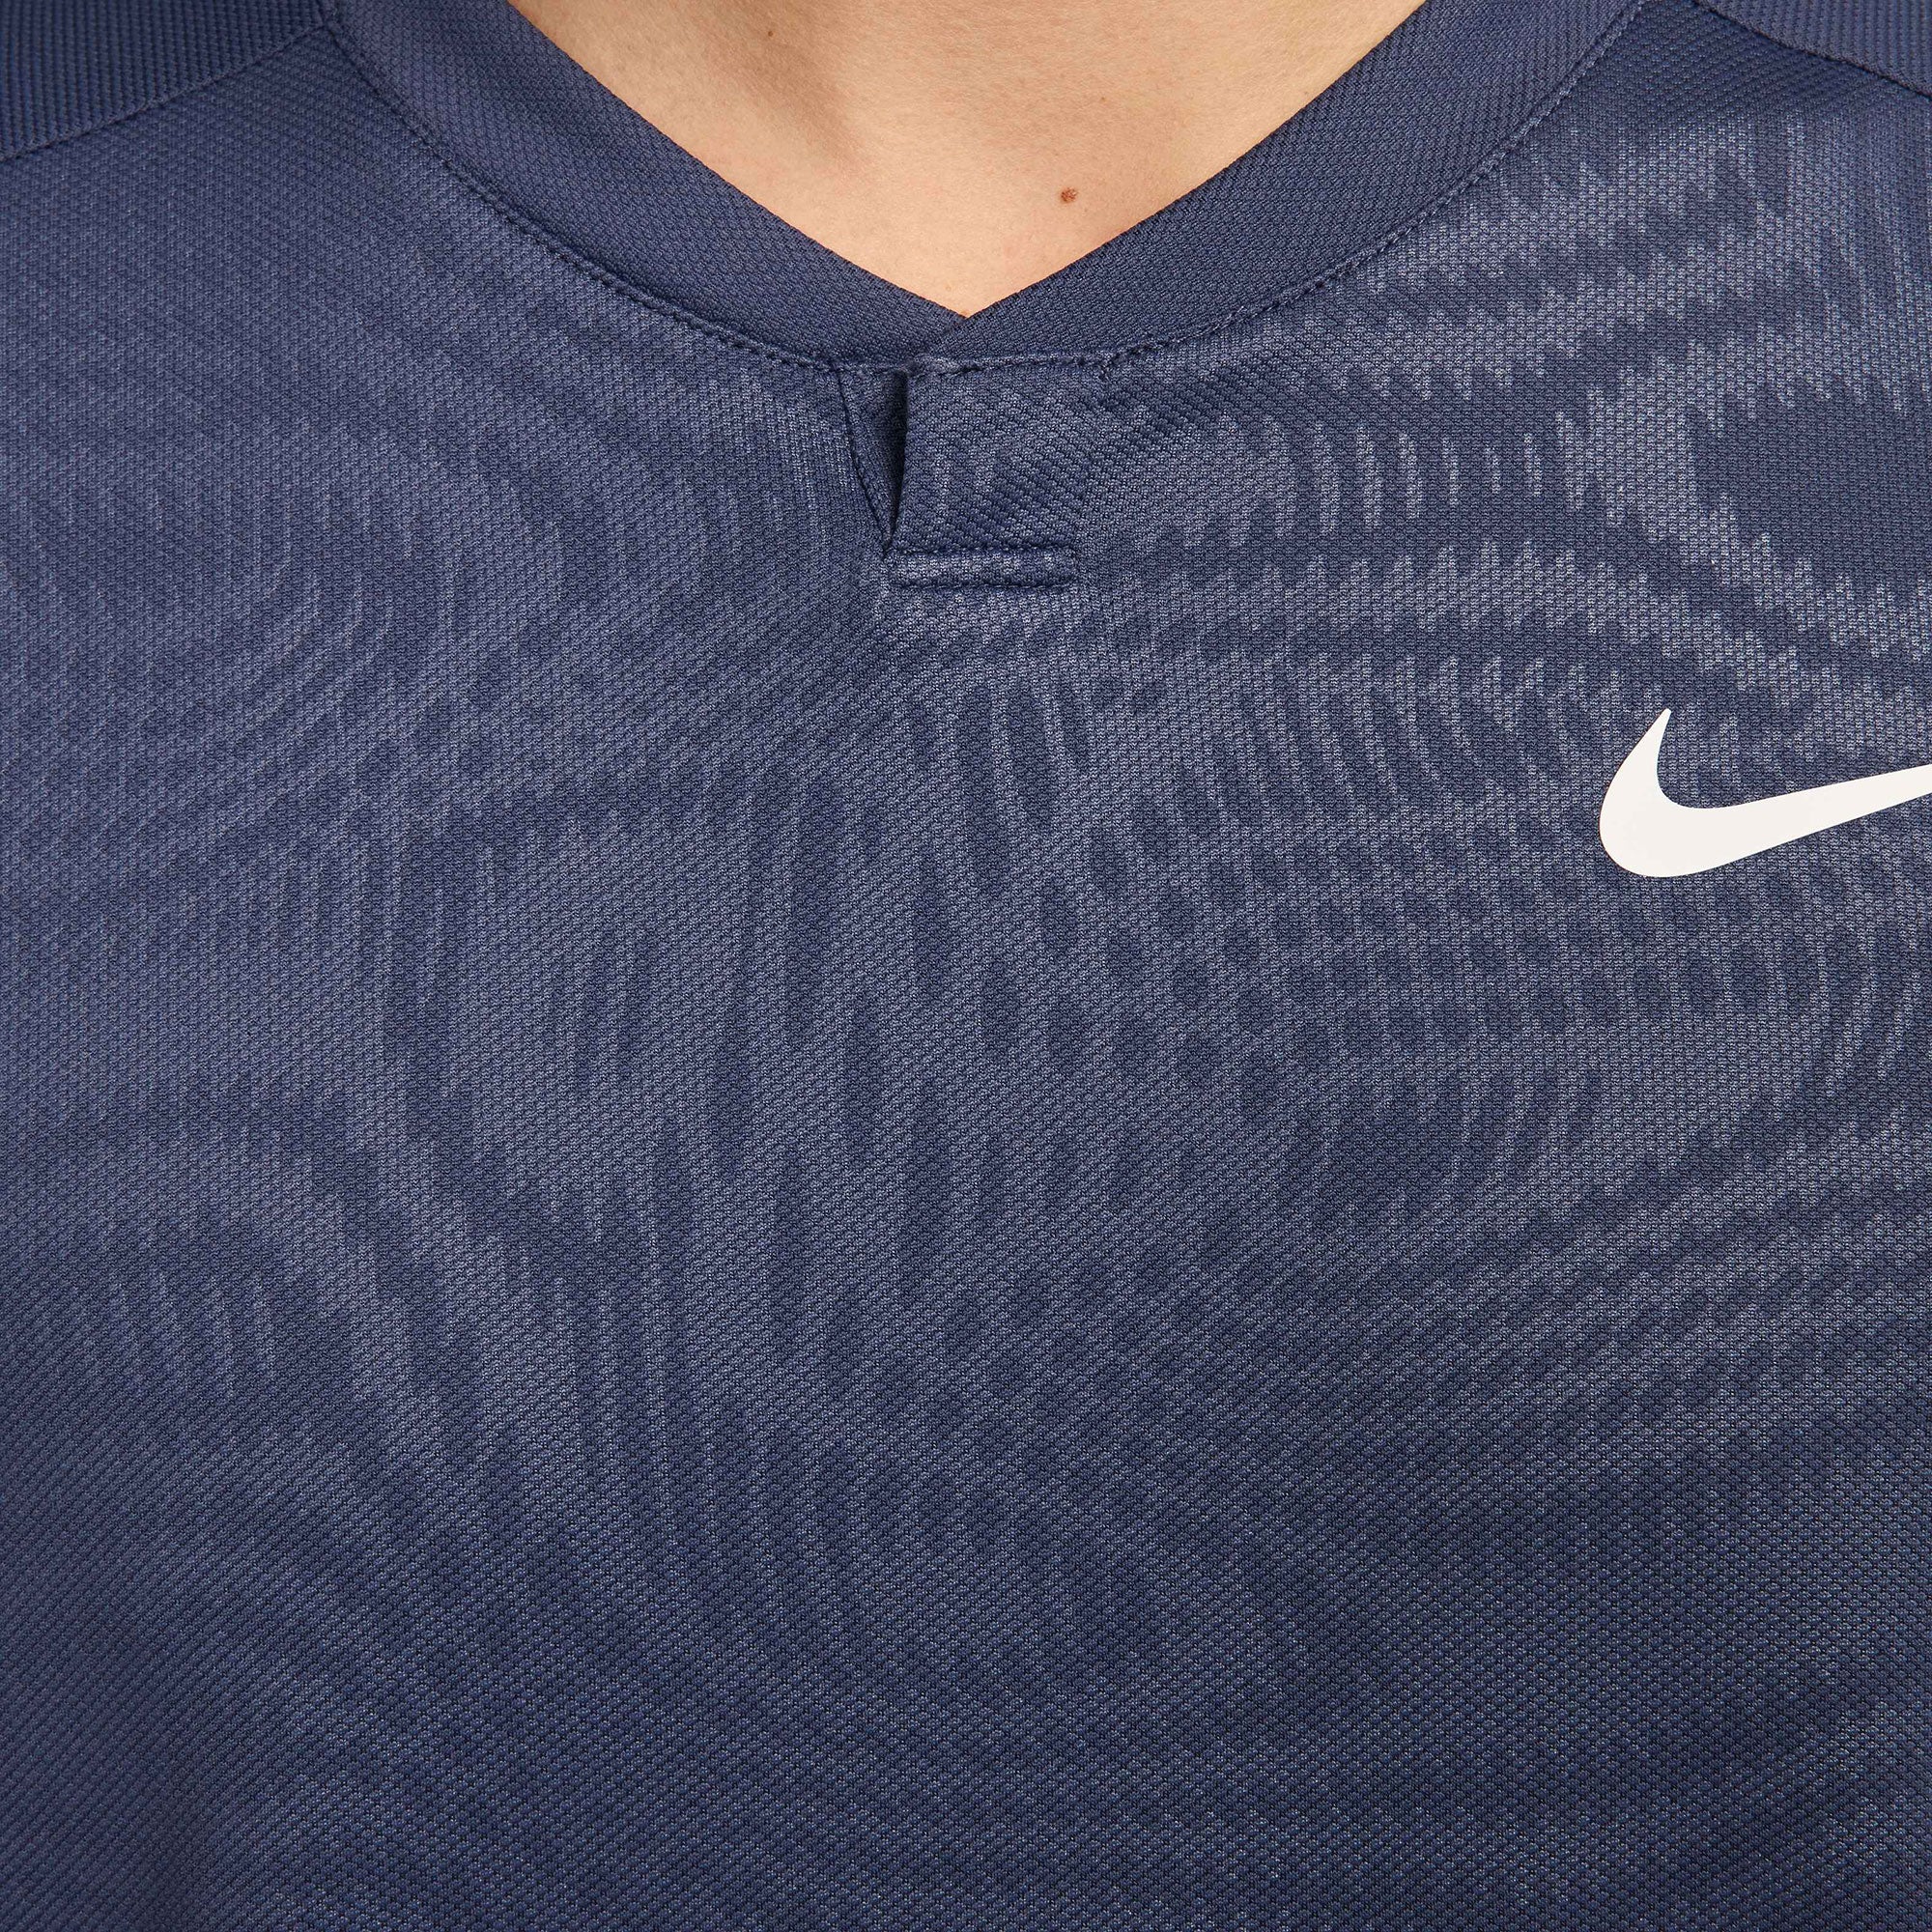 NikeCourt Slam Paris Men's Dri-FIT Tennis Shirt - Blue (4)